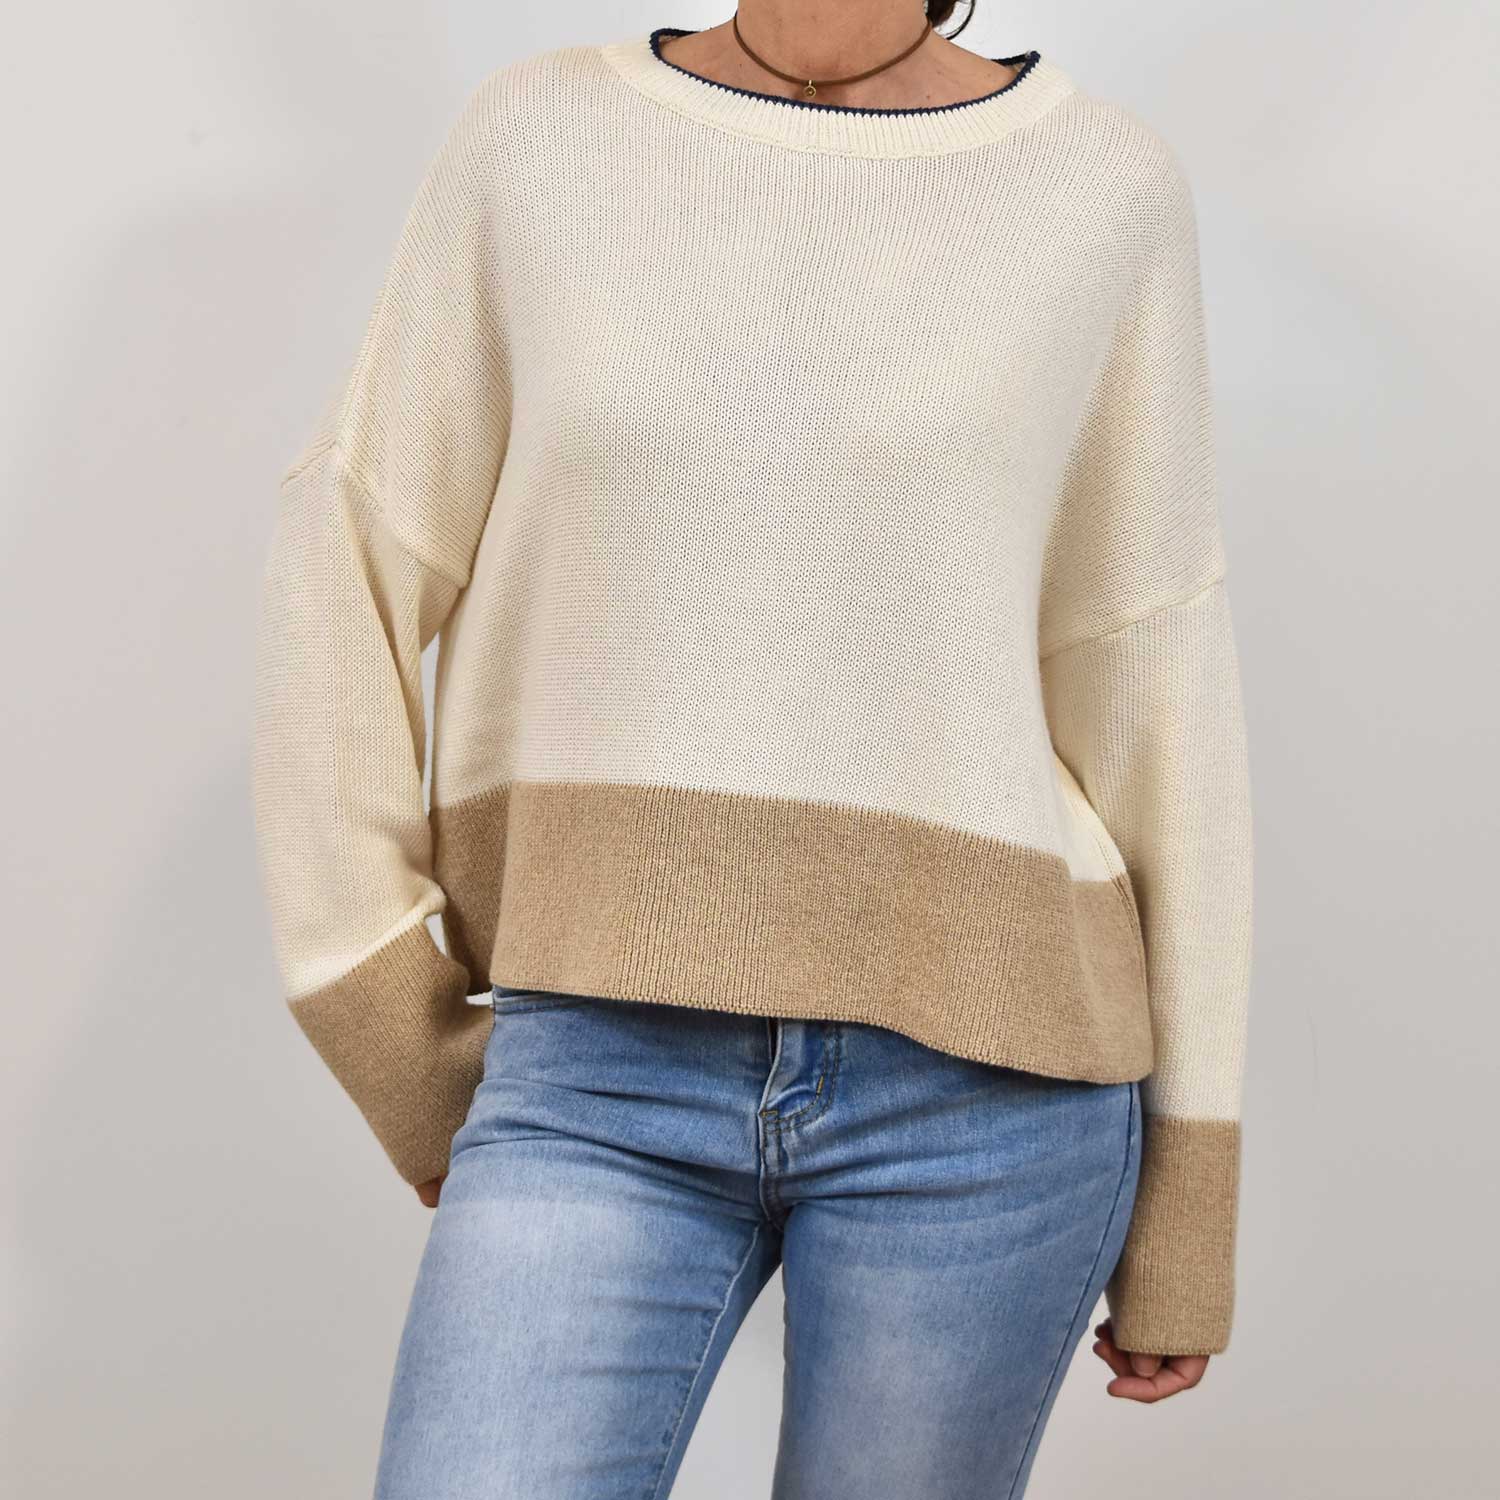 Beige bicolor sweater